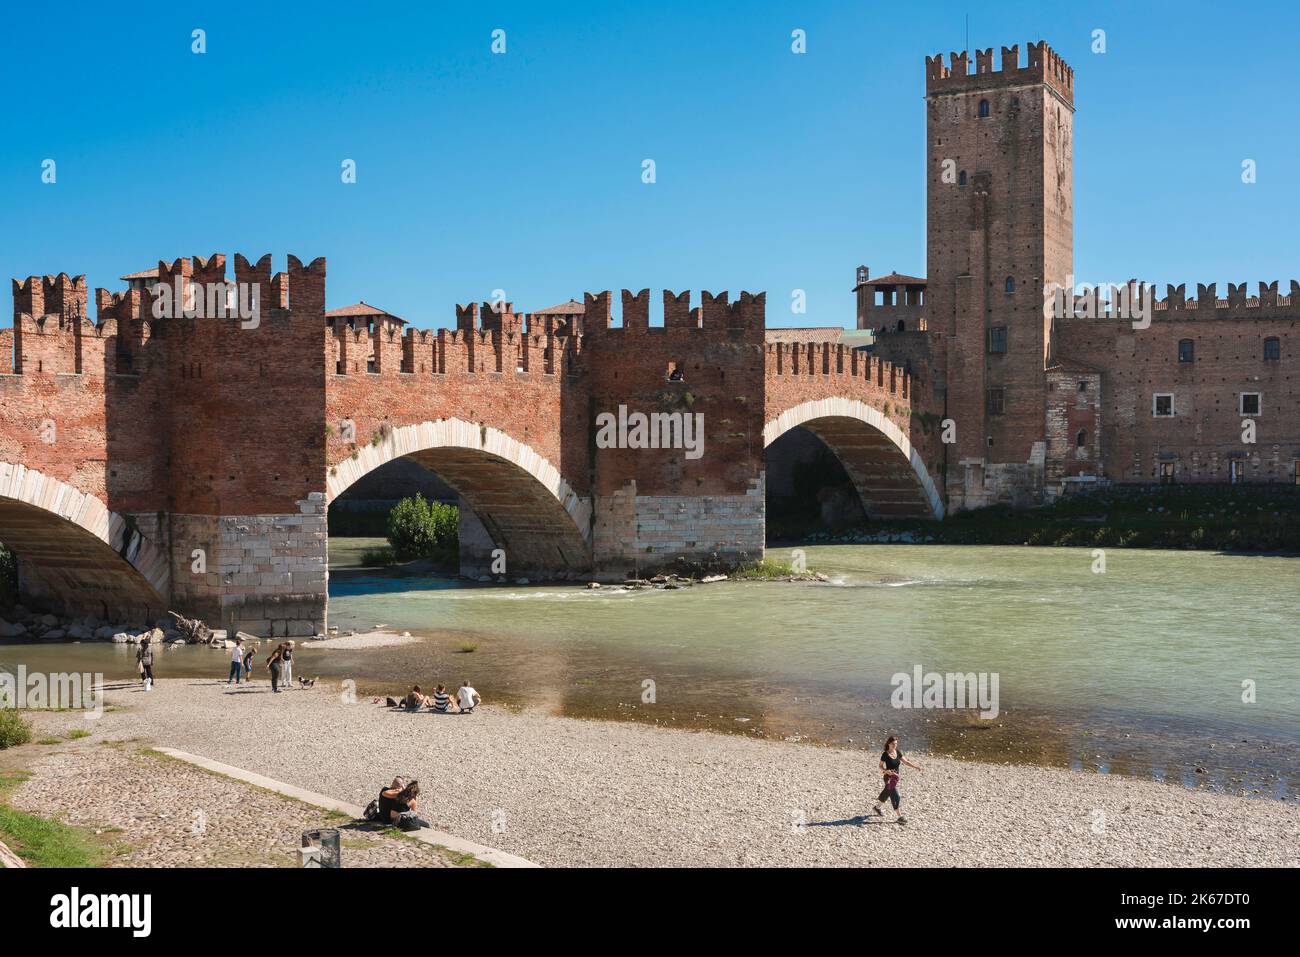 Verona arquitectura renacentista, vista en verano del histórico Ponte Scaligero del siglo 14th y Castelvecchio fortaleza en la ciudad de Verona, Italia Foto de stock